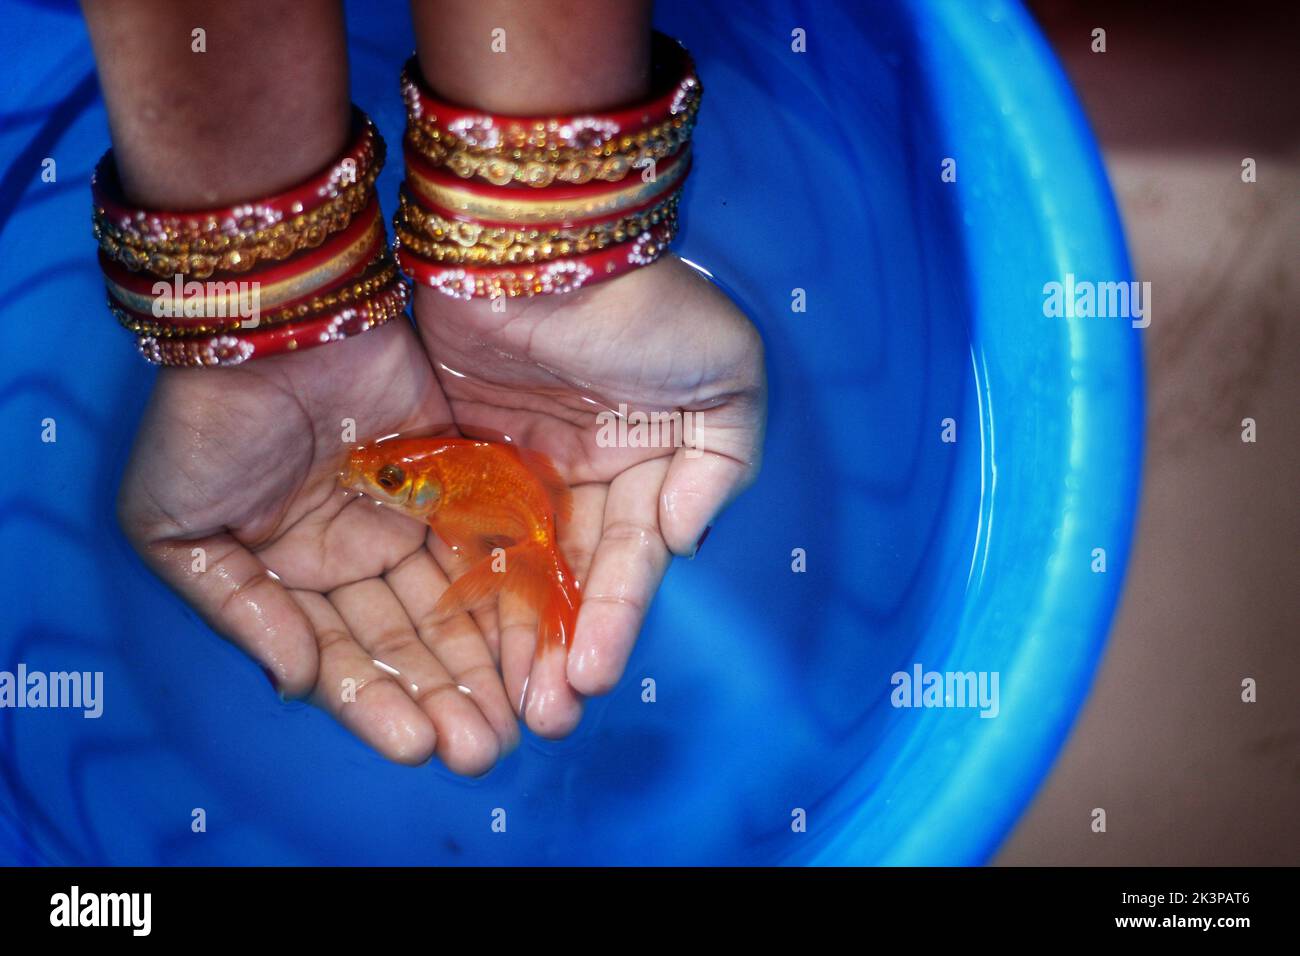 Vue de dessus d'un poisson rouge commun dans les mains d'une personne portant des bracelets rouges au-dessus d'un seau d'eau bleu Banque D'Images